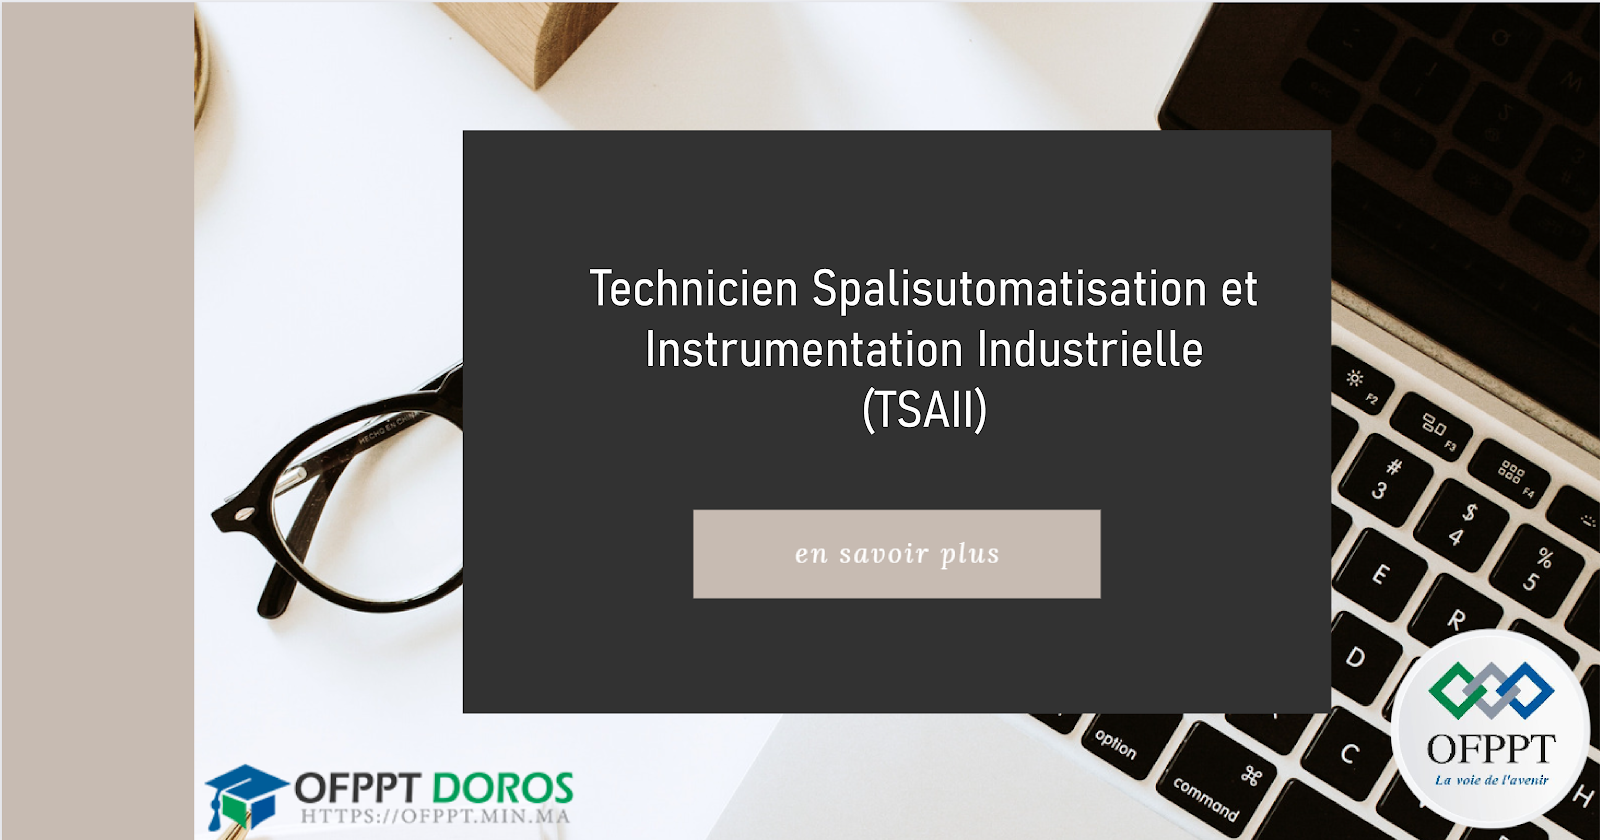 Technicien Spécialisé en Automatisation et Instrumentation Industrielle (TSAII)